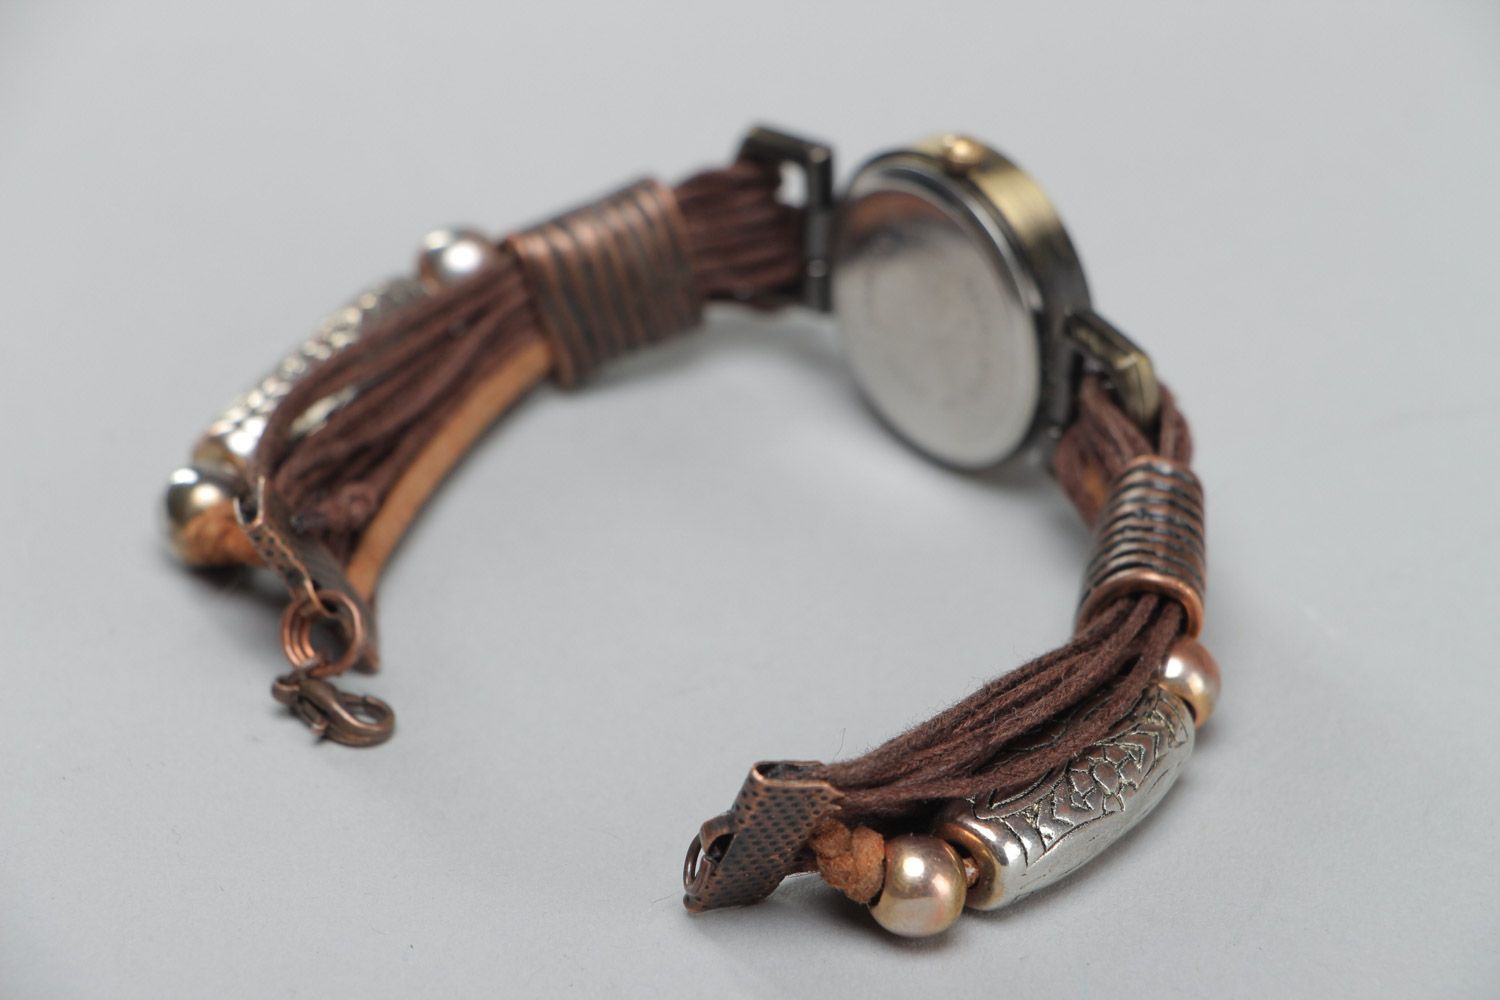 Наручные часы с узким ремешком из вощенного шнура коричневые ручной работы фото 4